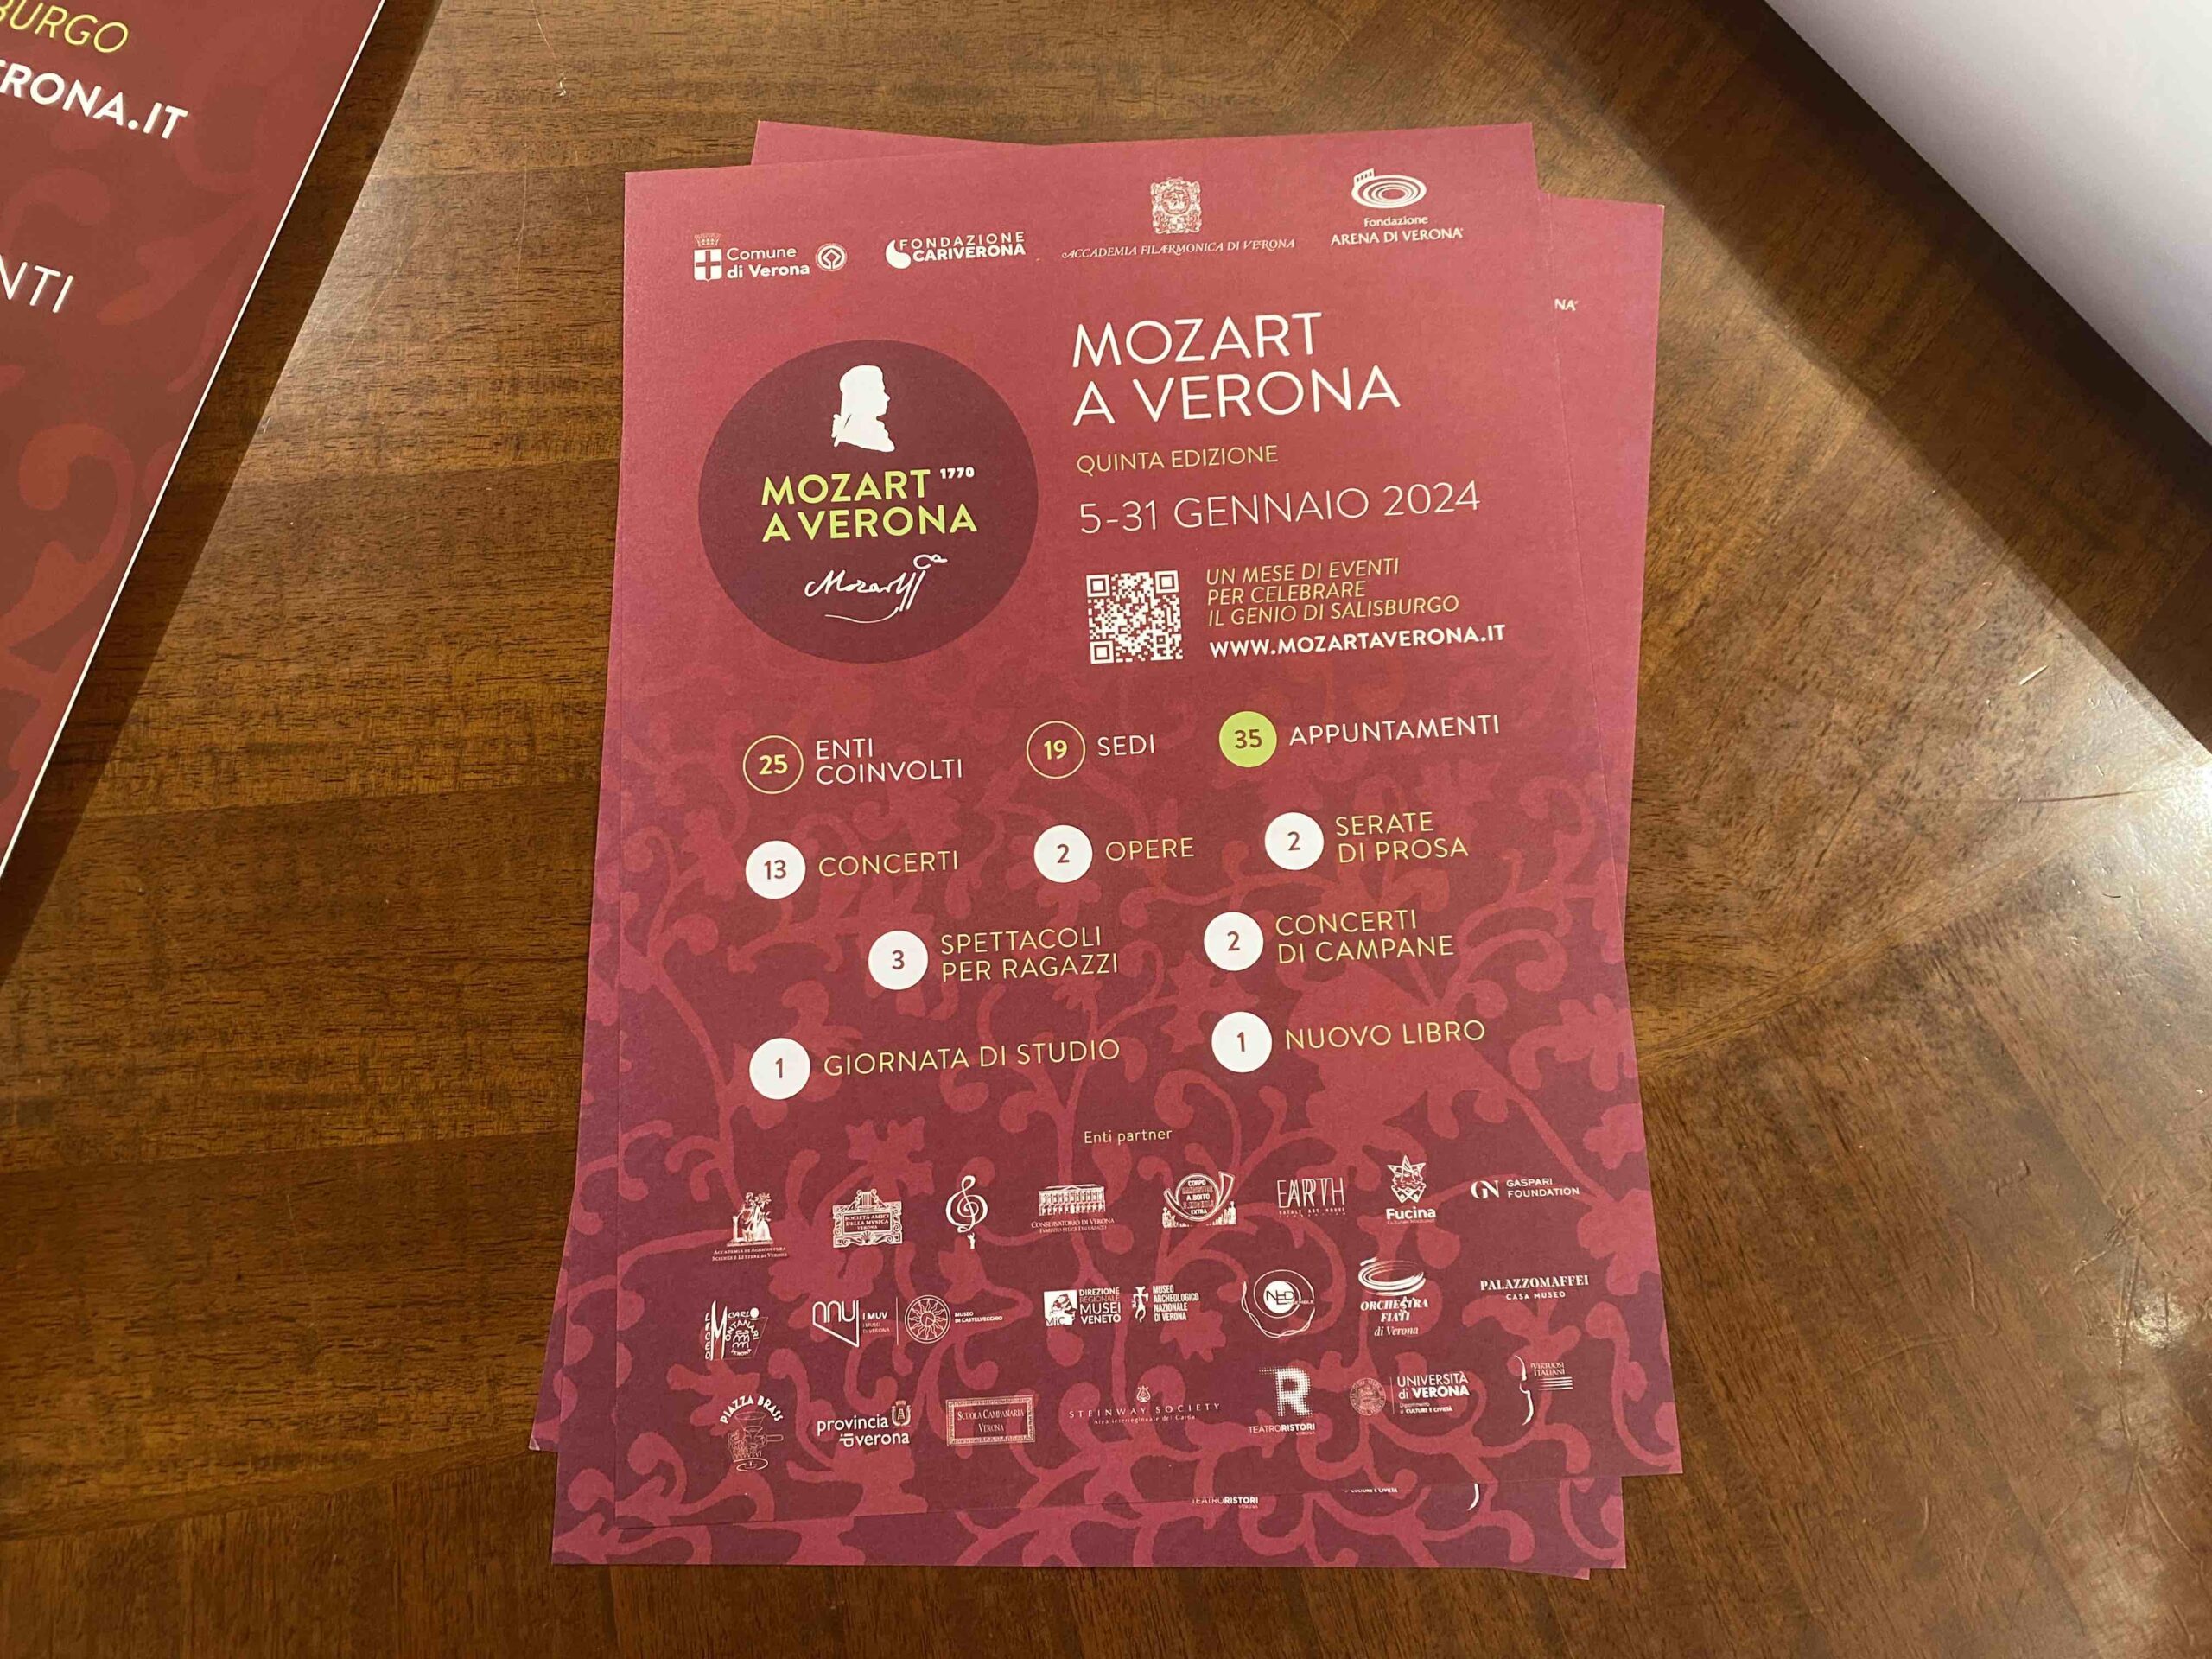 Presentata questa mattina la 5ª edizione del Festival Mozart a Verona